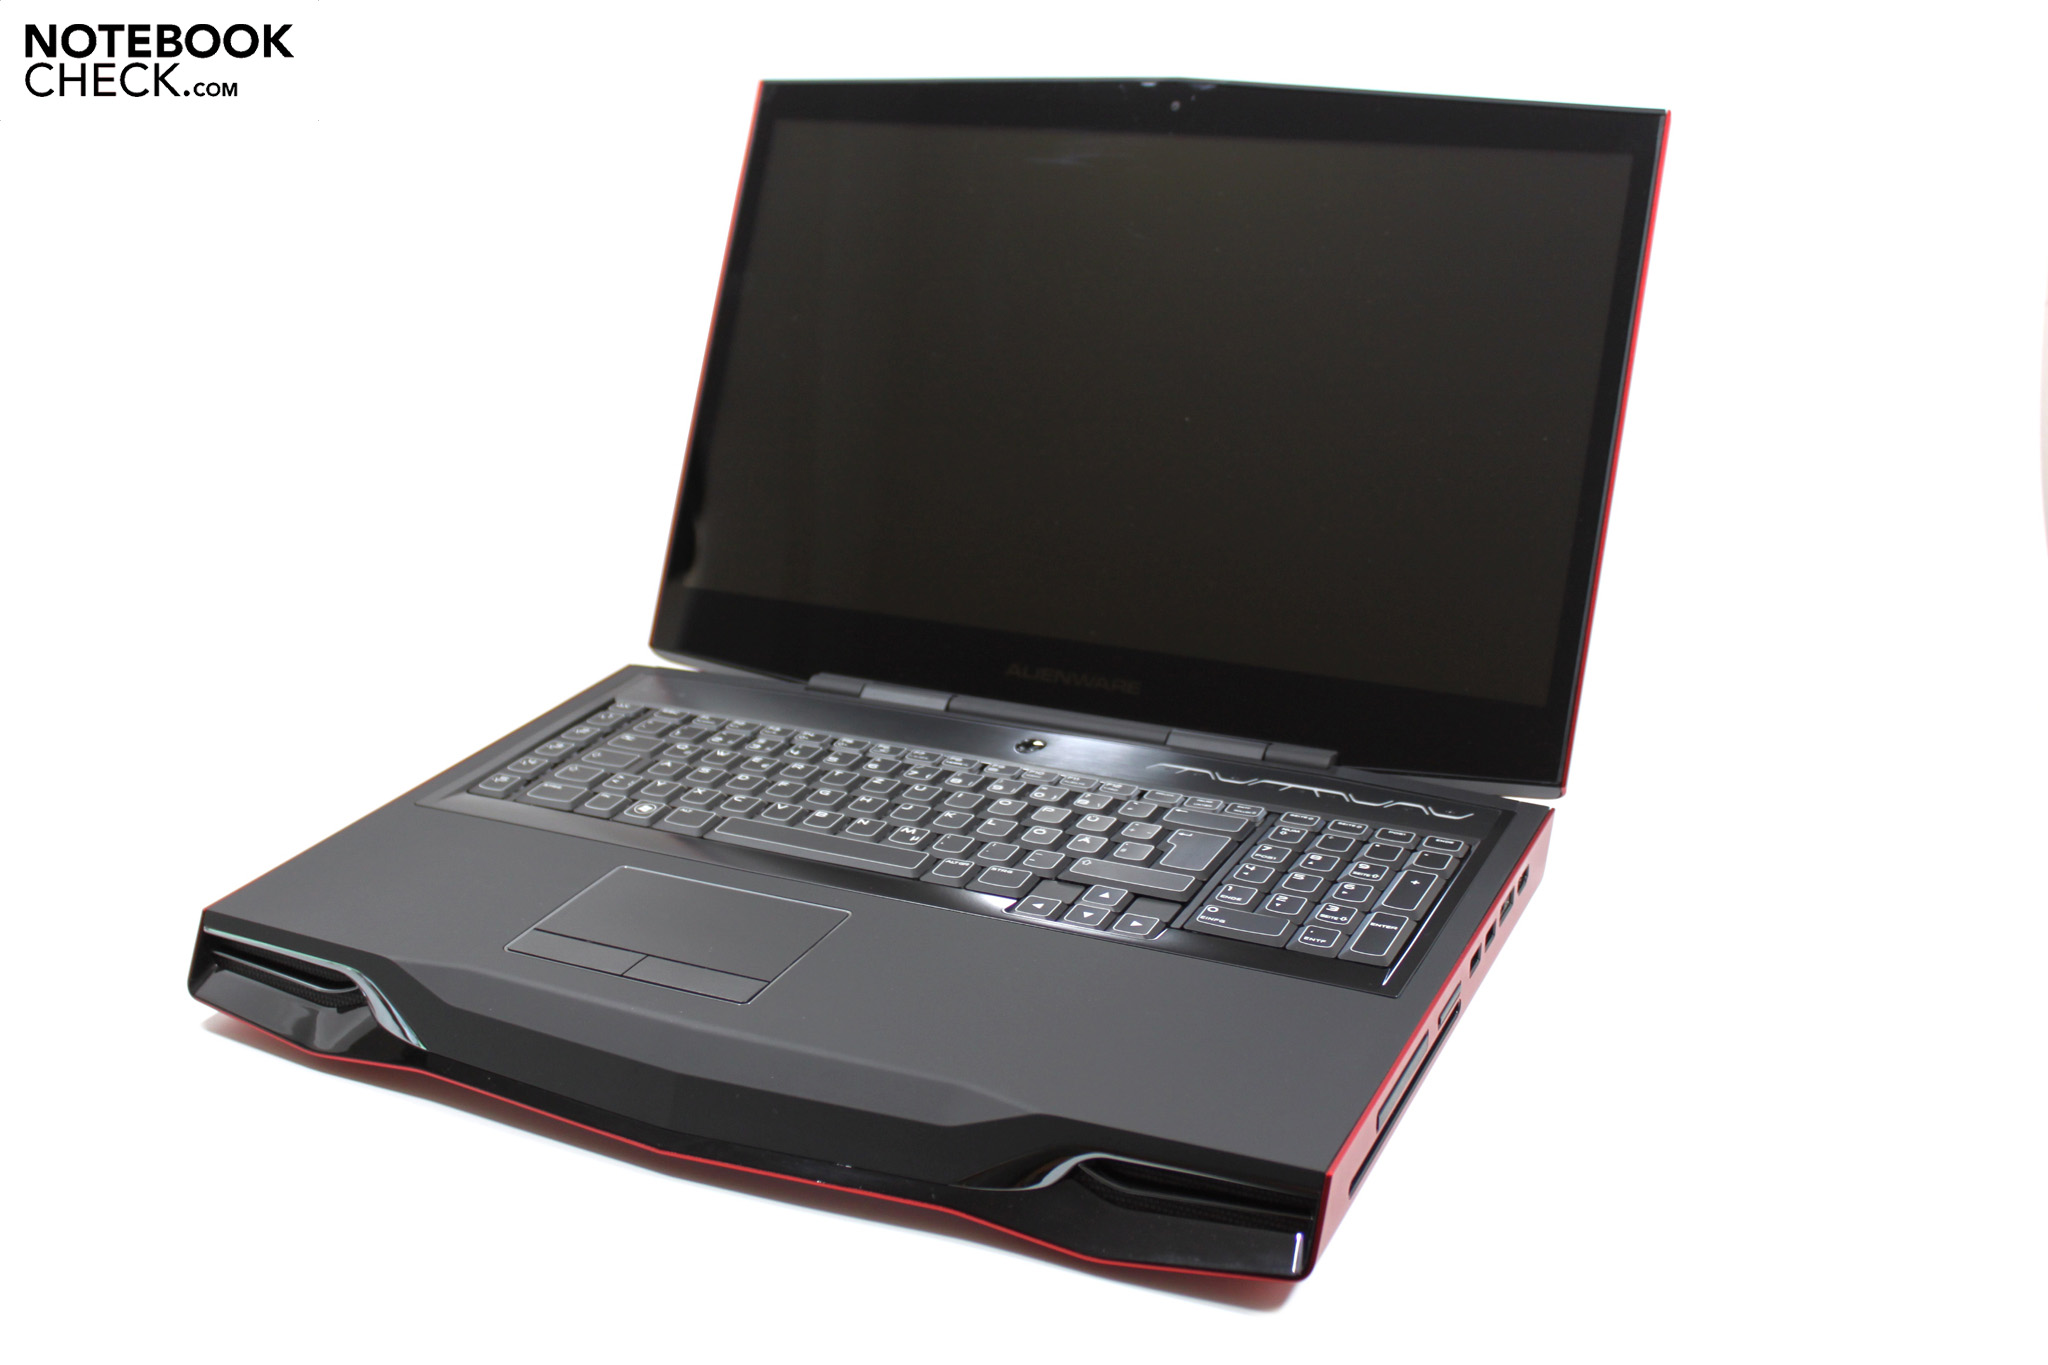 Alienware M18x R2 Gaming Laptop: Dual Gpus Attack